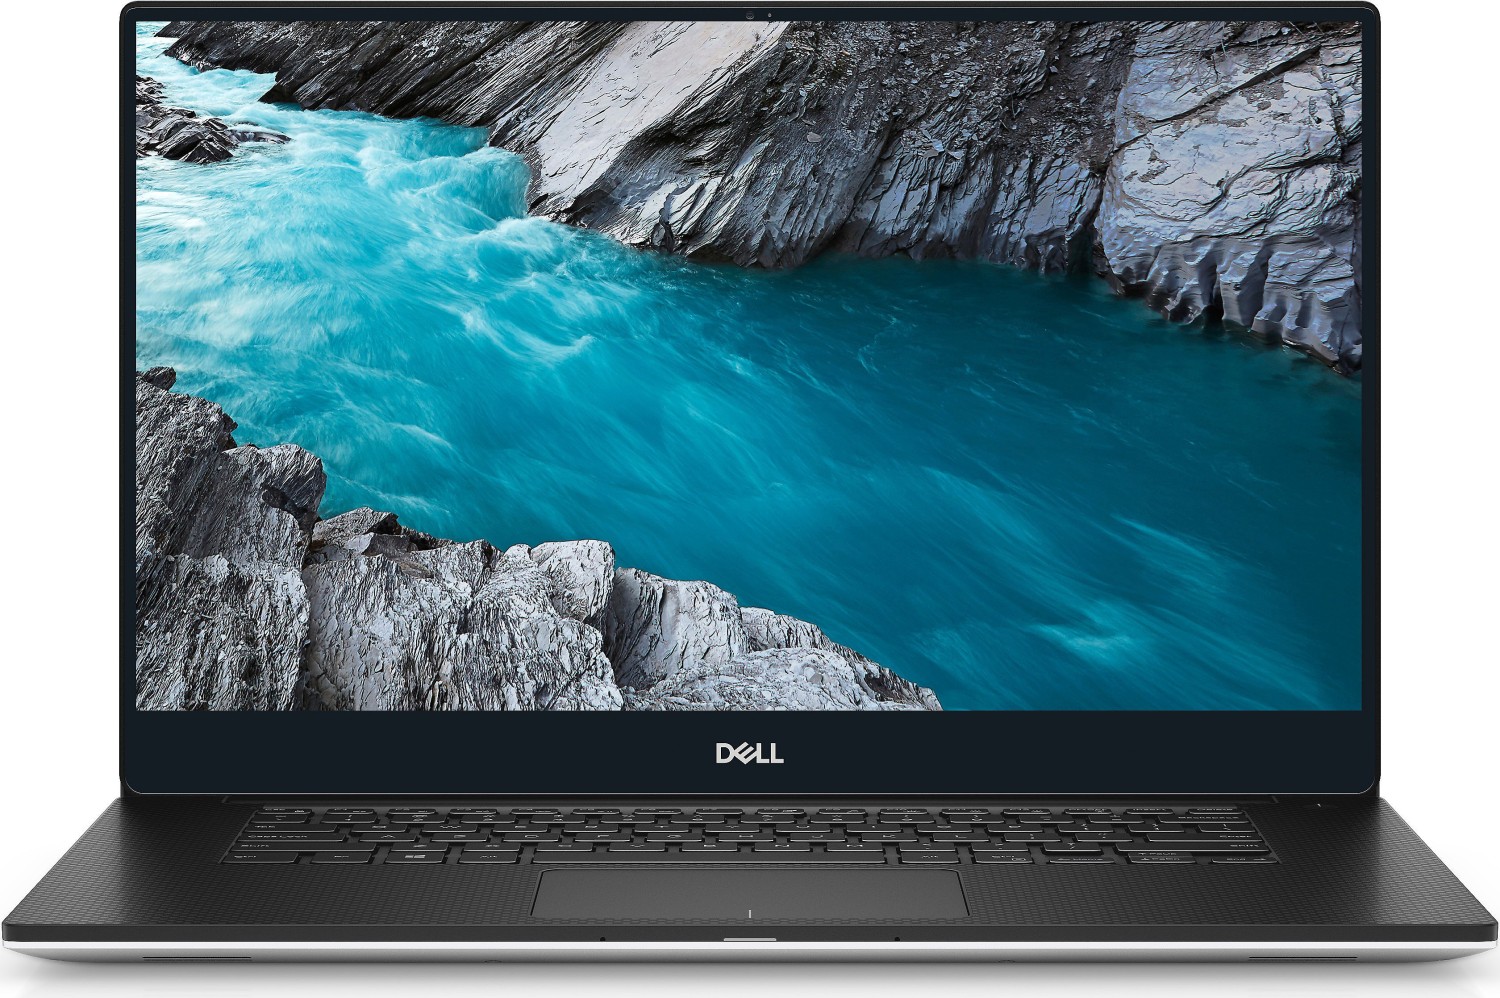 Dell XPS 15 7590, i5-9300H, 15.6, 8 GB, 256 GB SSD, FHD, Rétroéclairage du clavier, Win 10 Pro, US, 1 034 €